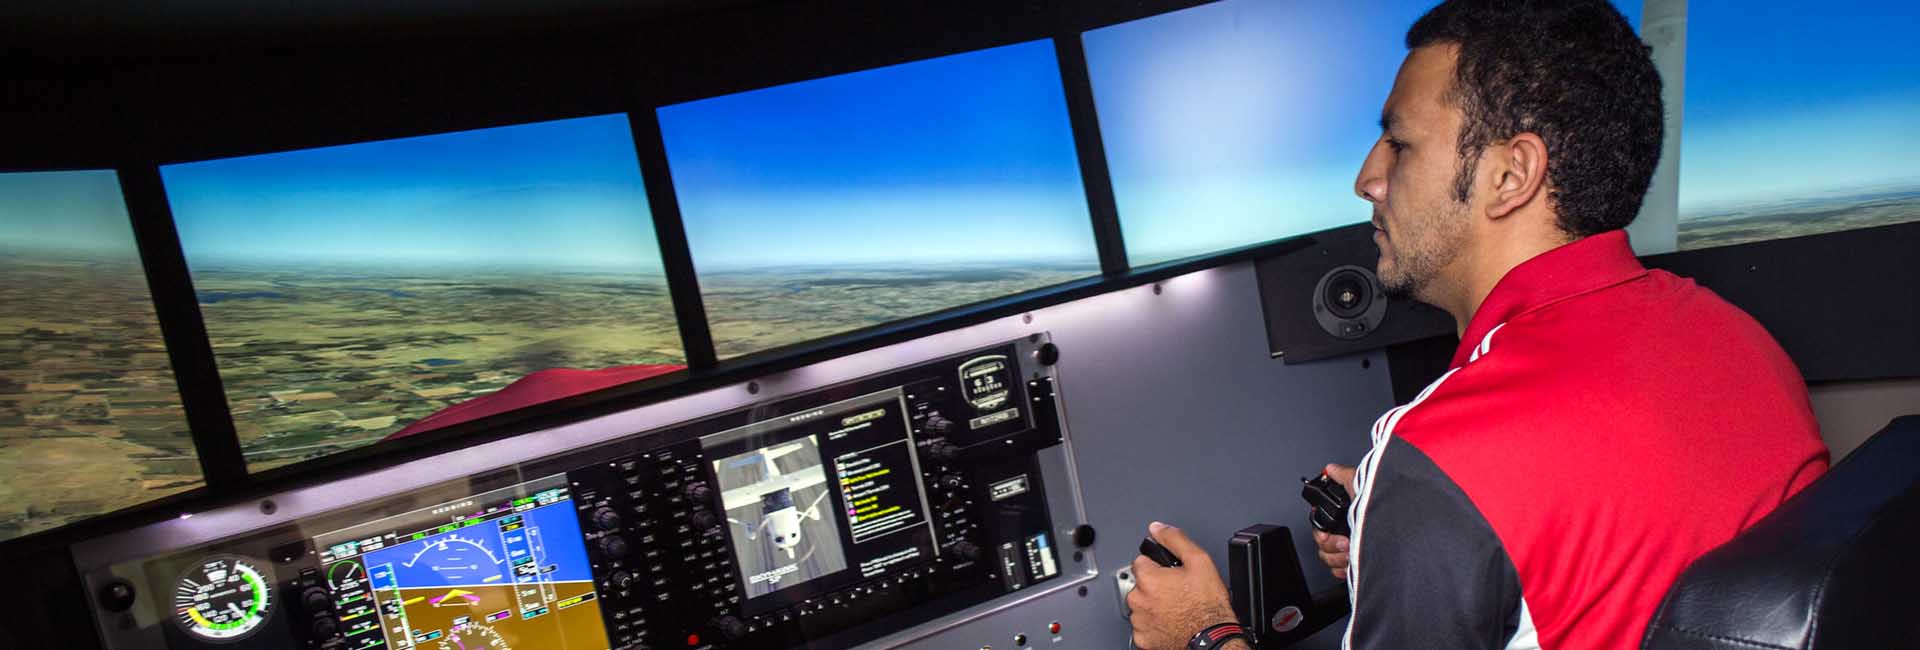 UNO student flies Aviation Institute's flight simulator